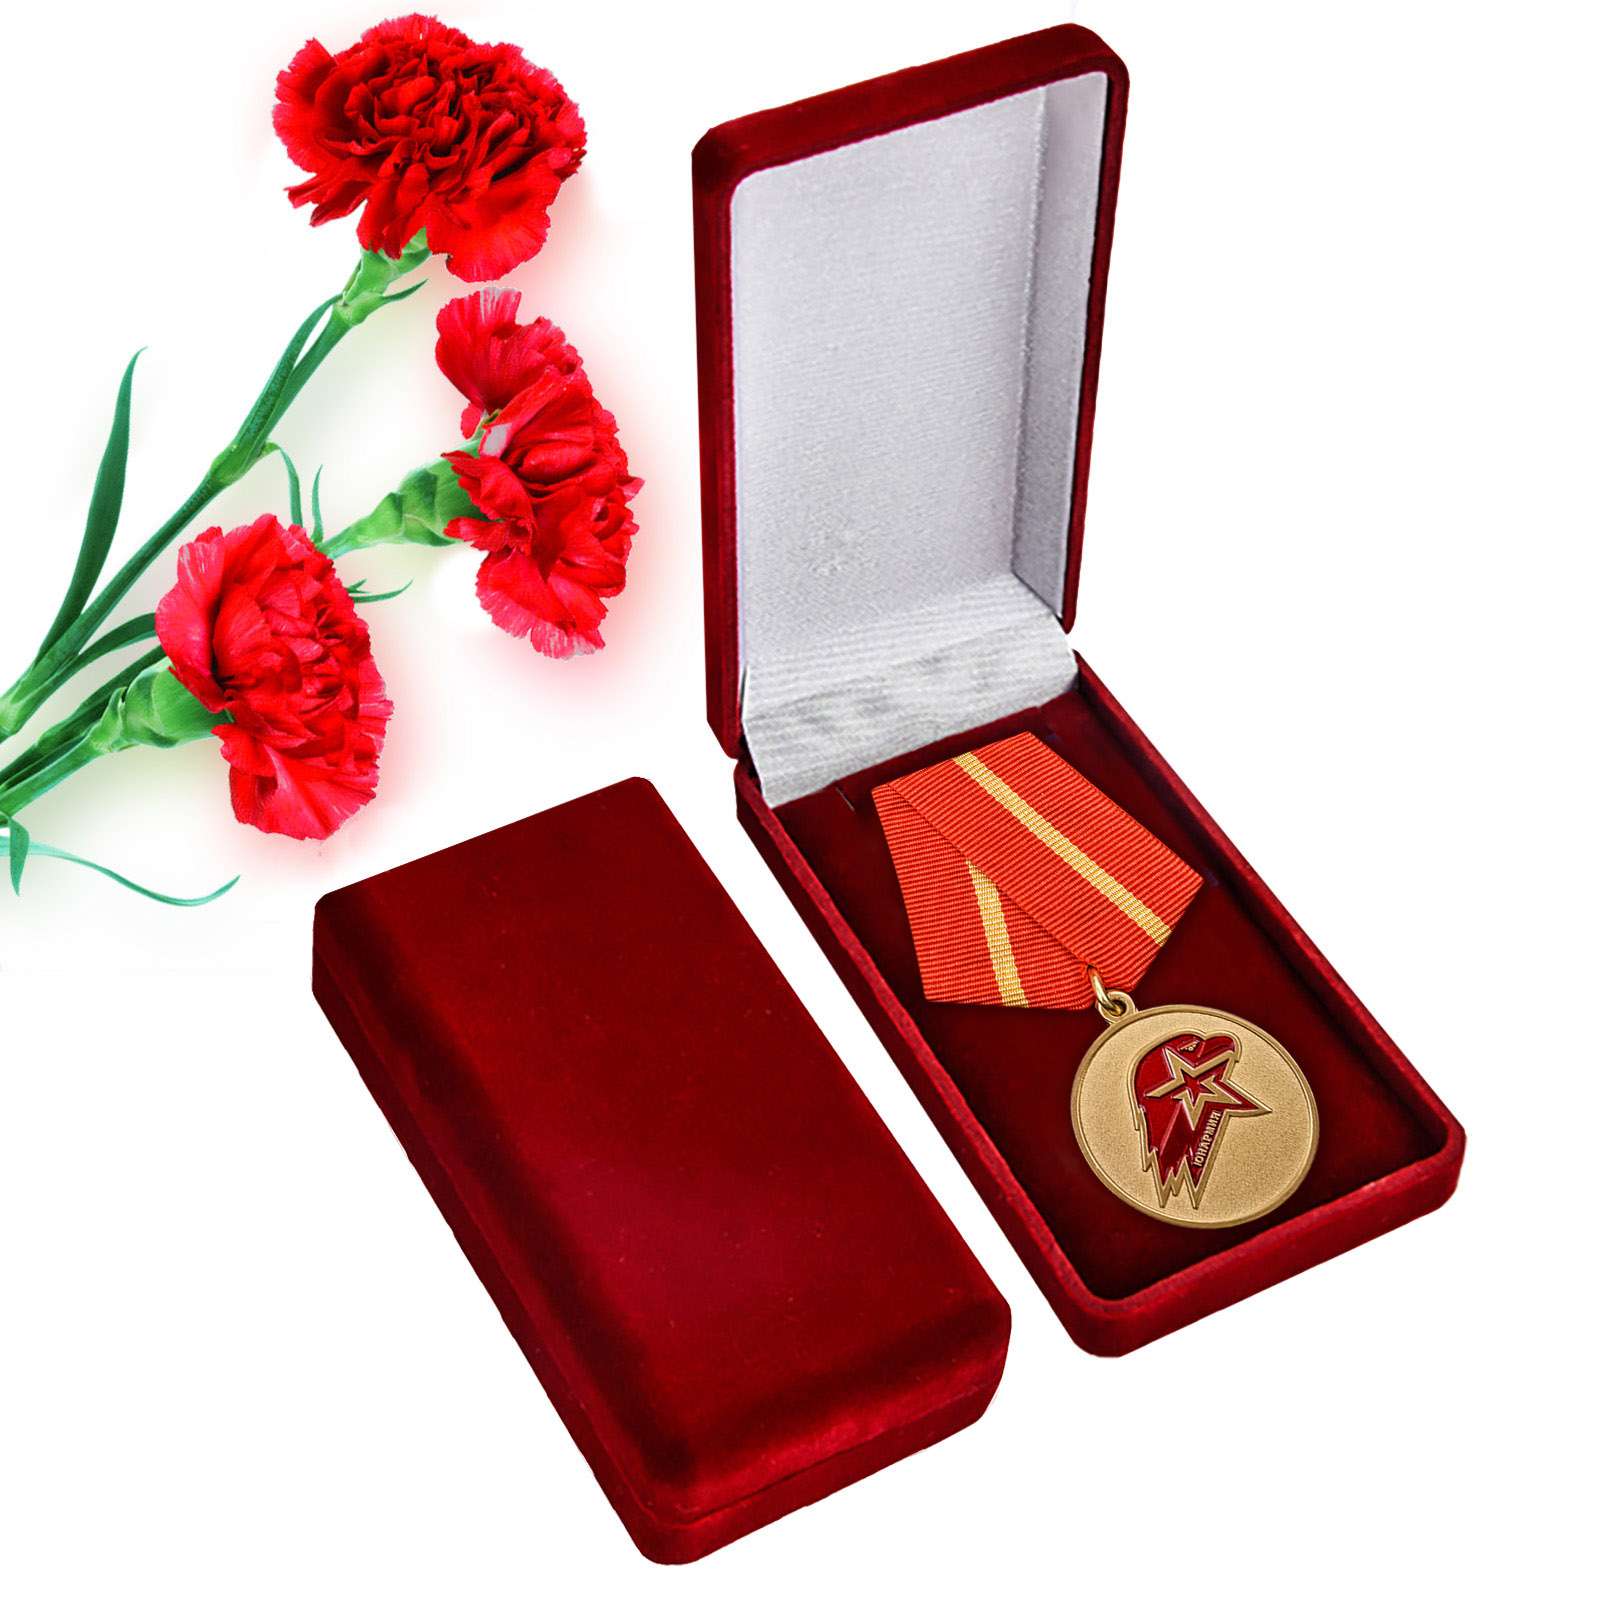 Купить памятную медаль Юнармии 1 степени в подарок онлайн